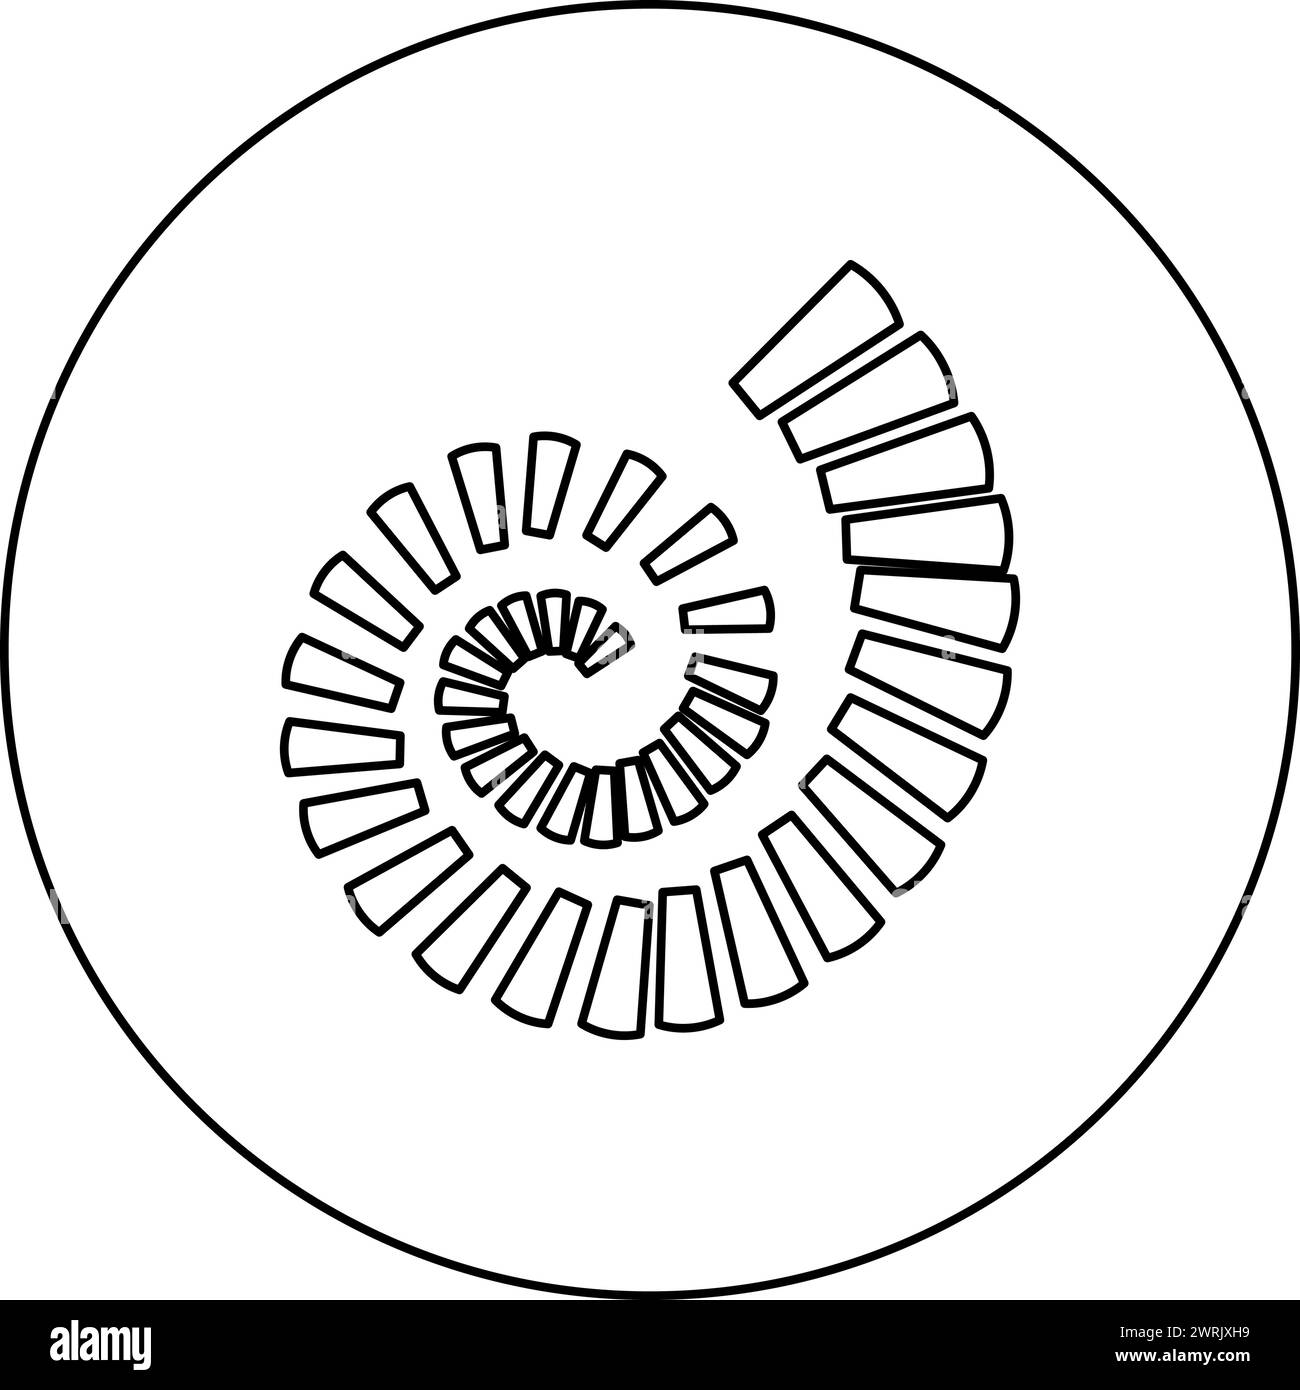 Escalier en colimaçon icône d'escalier circulaire en cercle rond noir illustration vectorielle d'image contour ligne de contour mince style simple Illustration de Vecteur